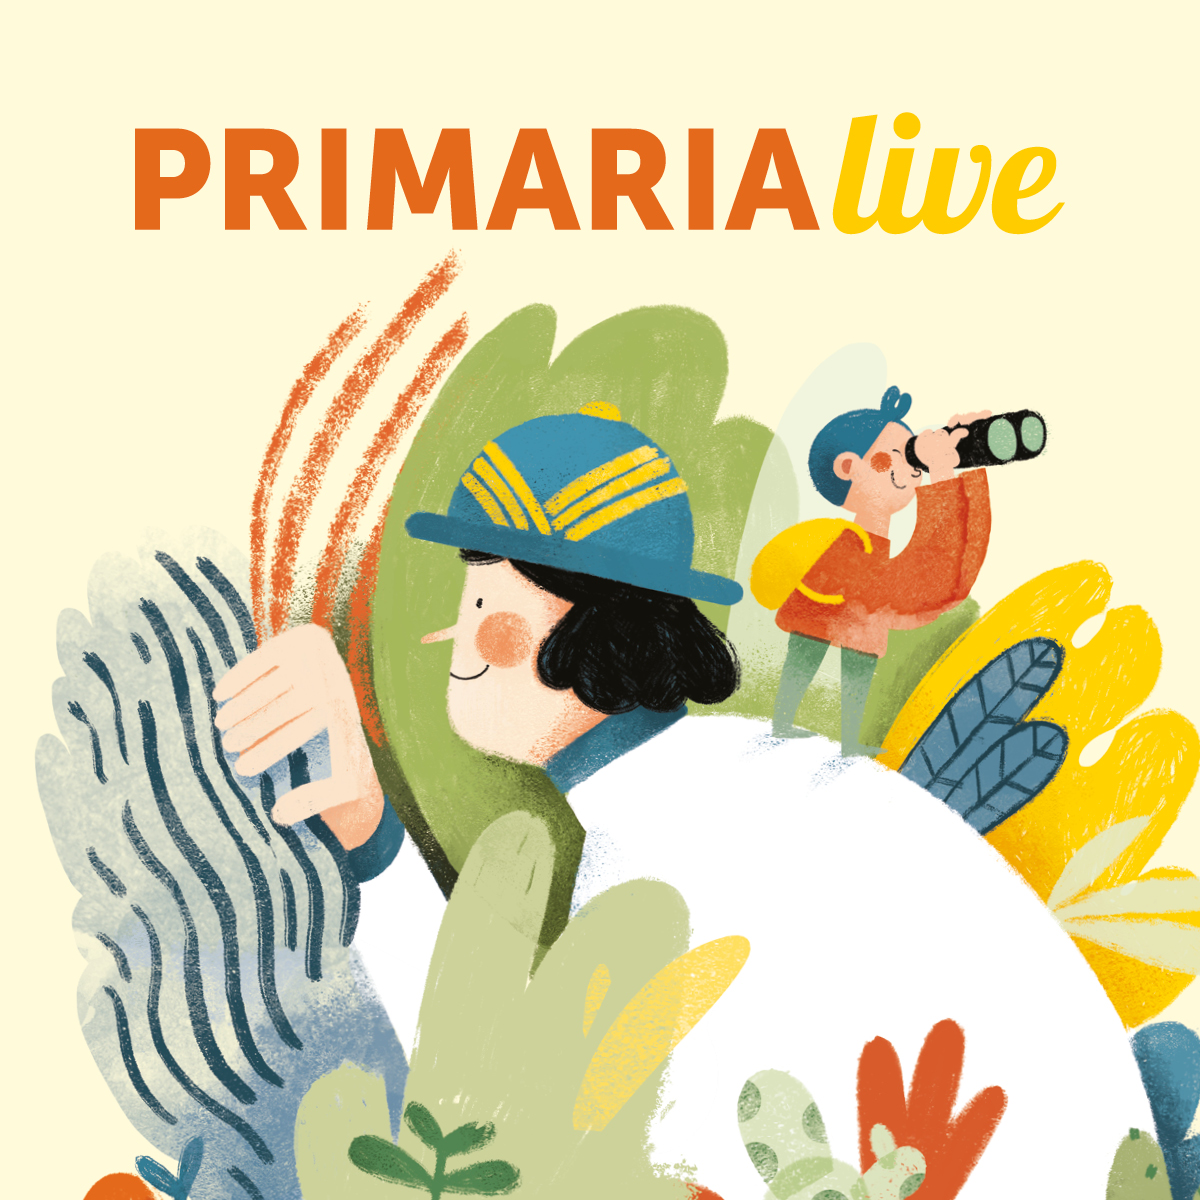 Primaria Live 9/03